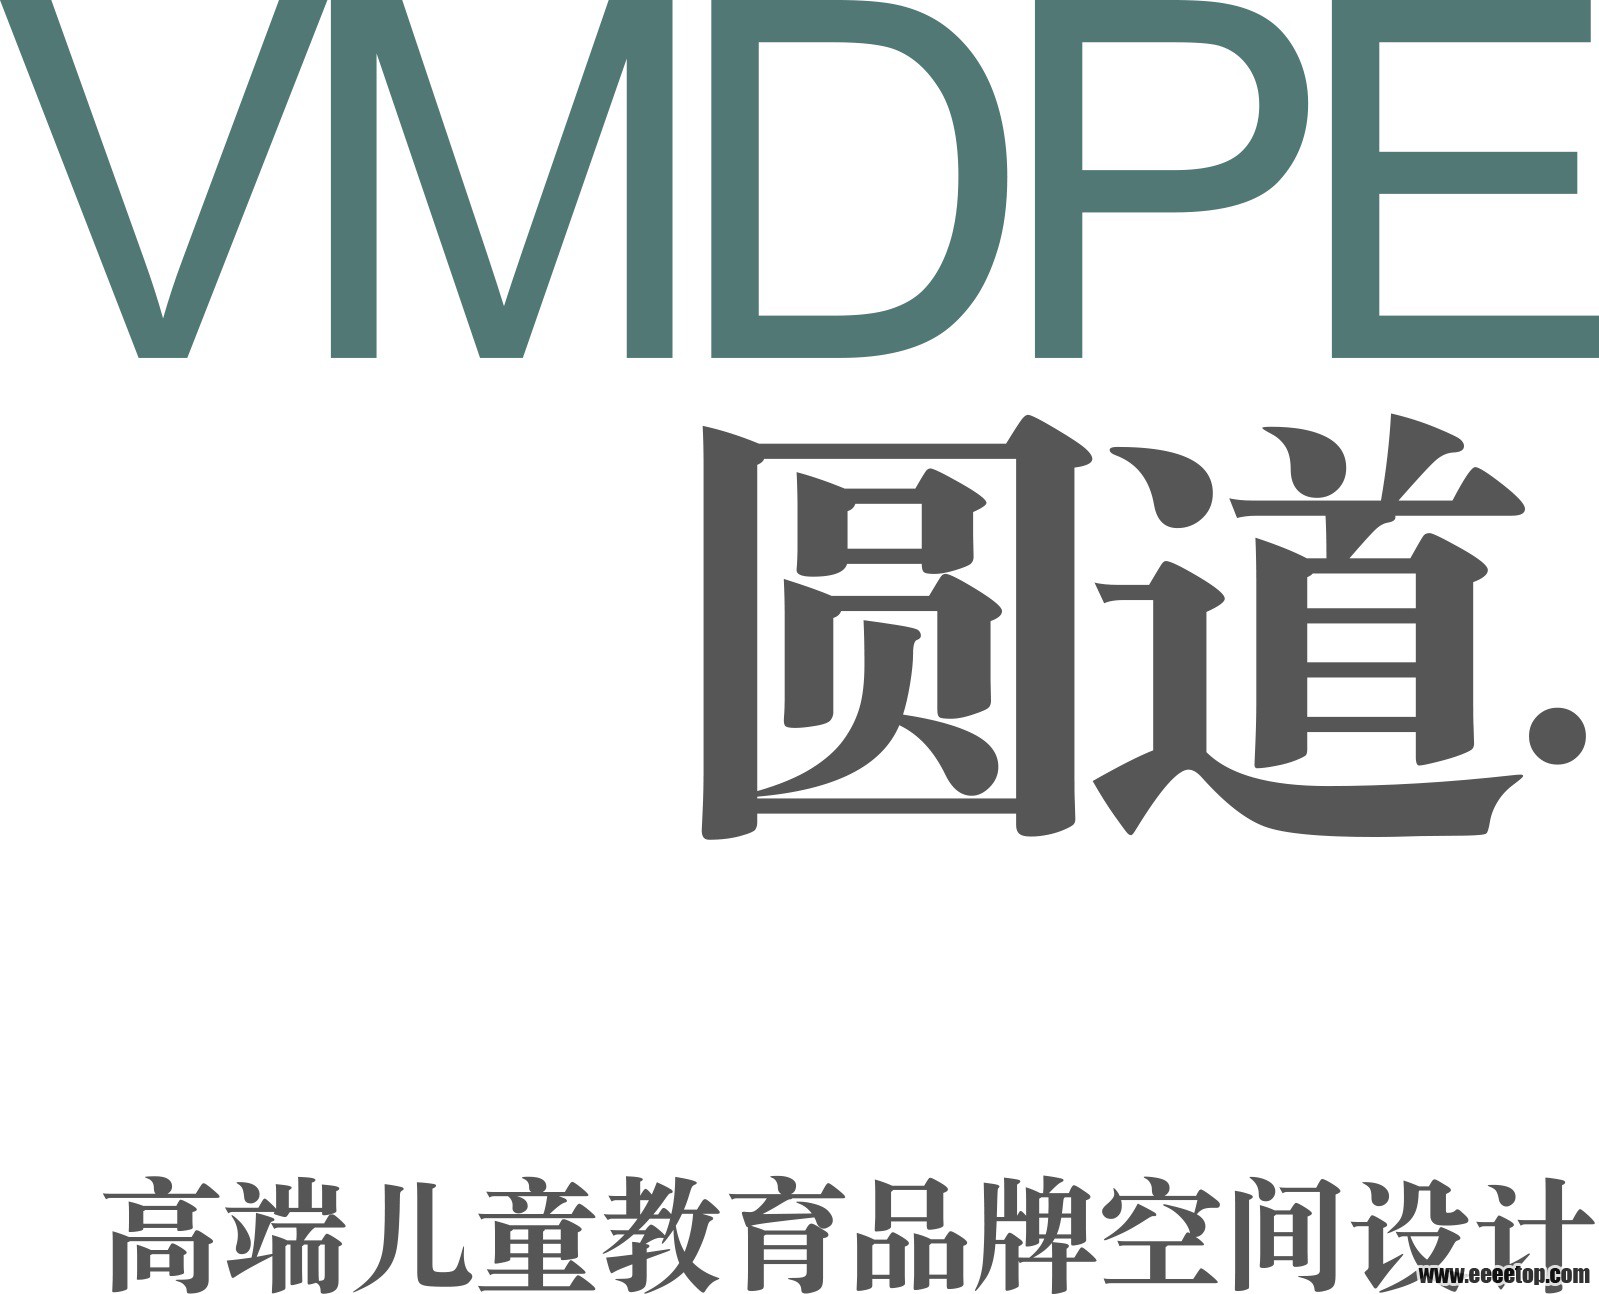 VMDPE-logo.jpg